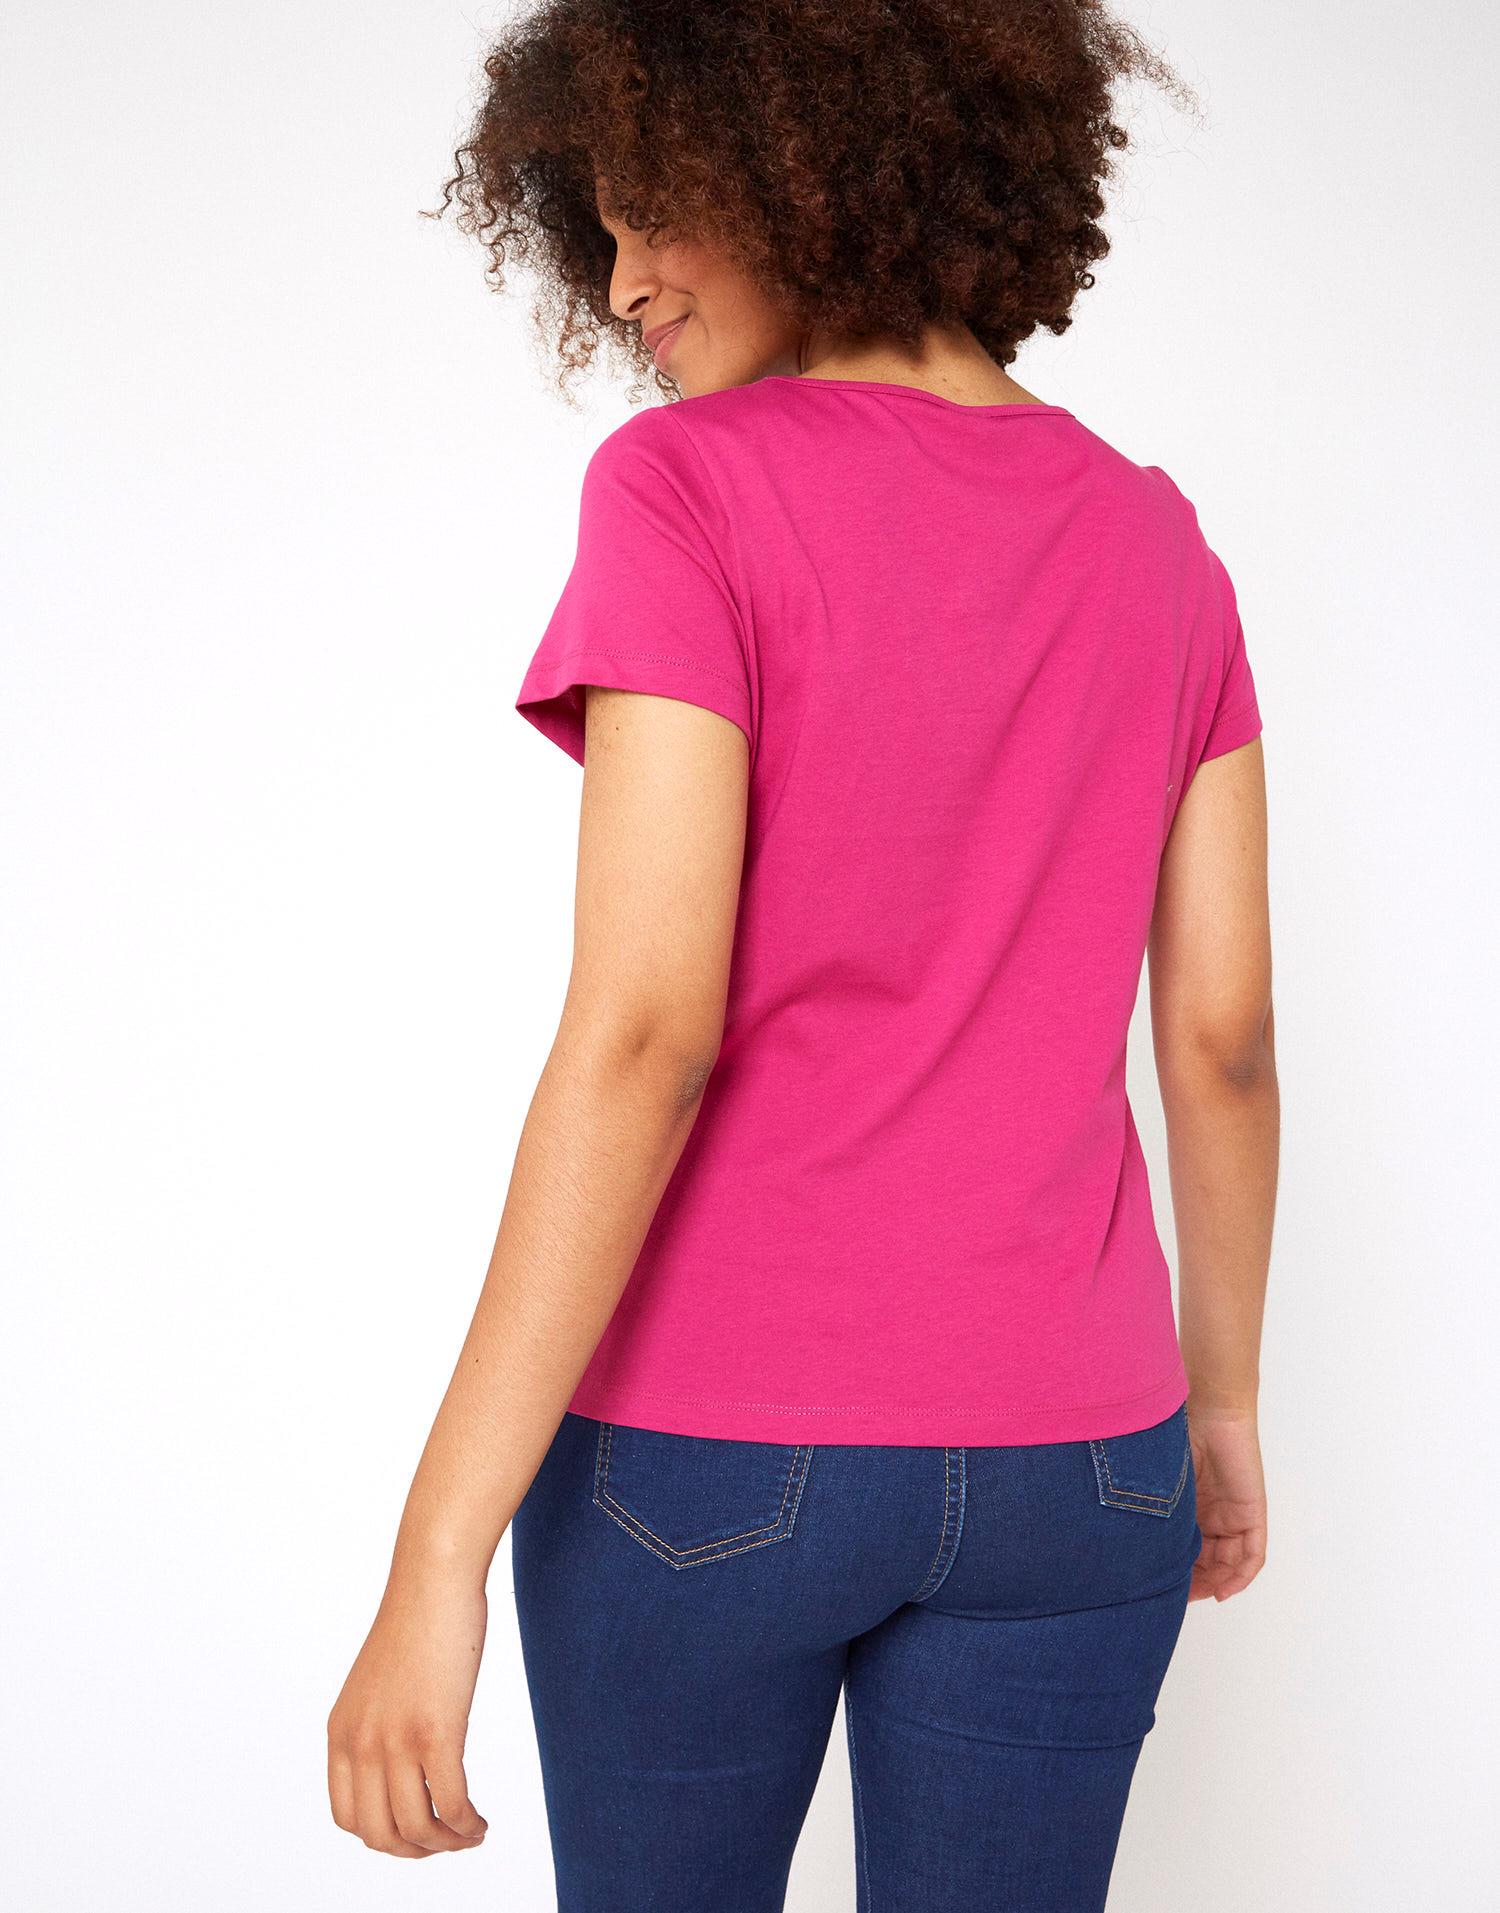 ステファネル レディース Tシャツ トップス T-shirts Pink トップス